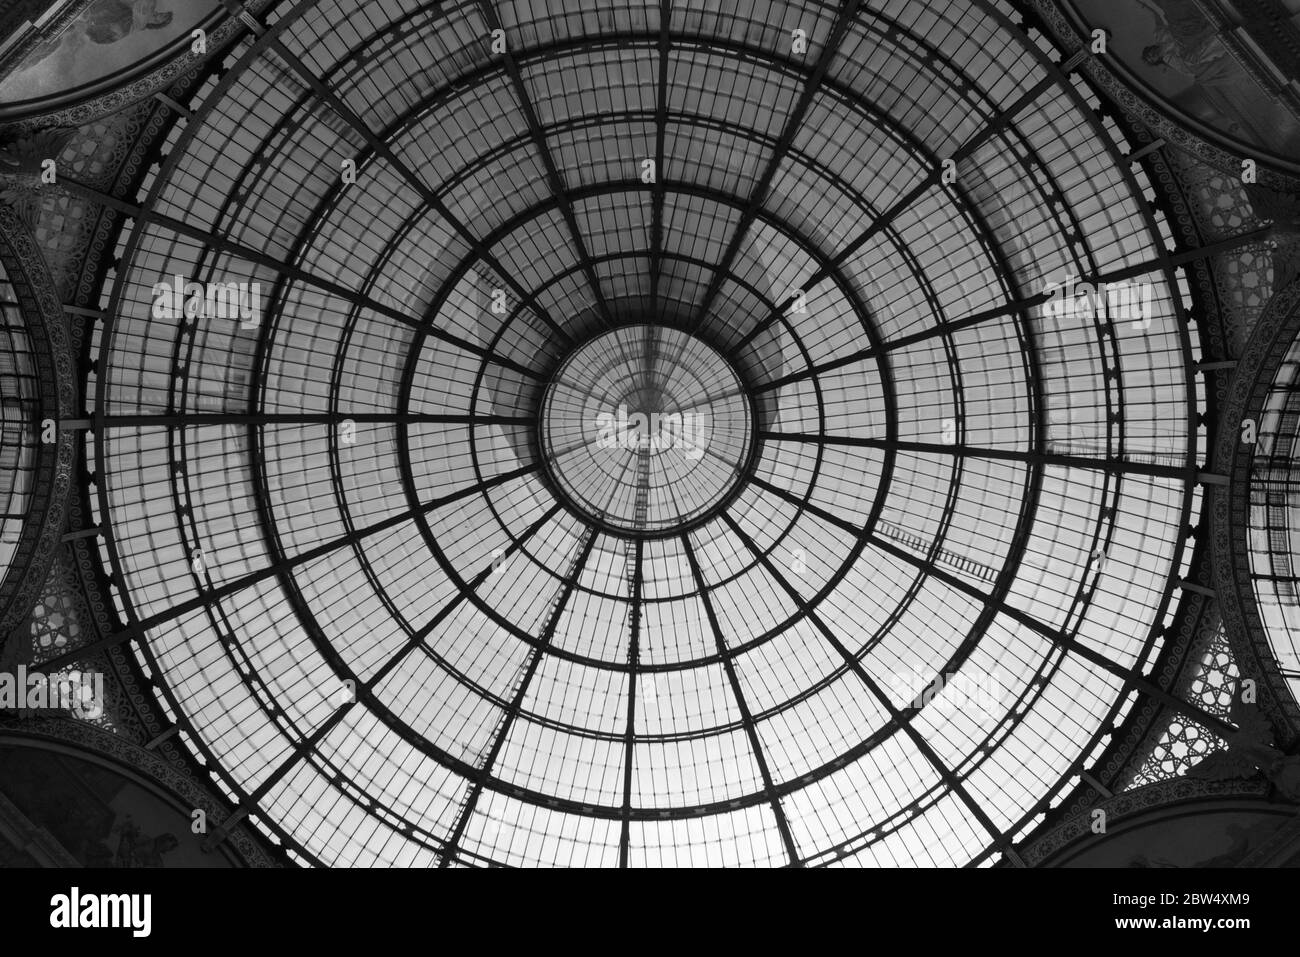 MILANO, ITALIA - 16 MARZO 2018: Immagine in bianco e nero del soffitto architettonico della Galleria Vittorio Emanuele II, un antico centro commerciale di Milano, Foto Stock